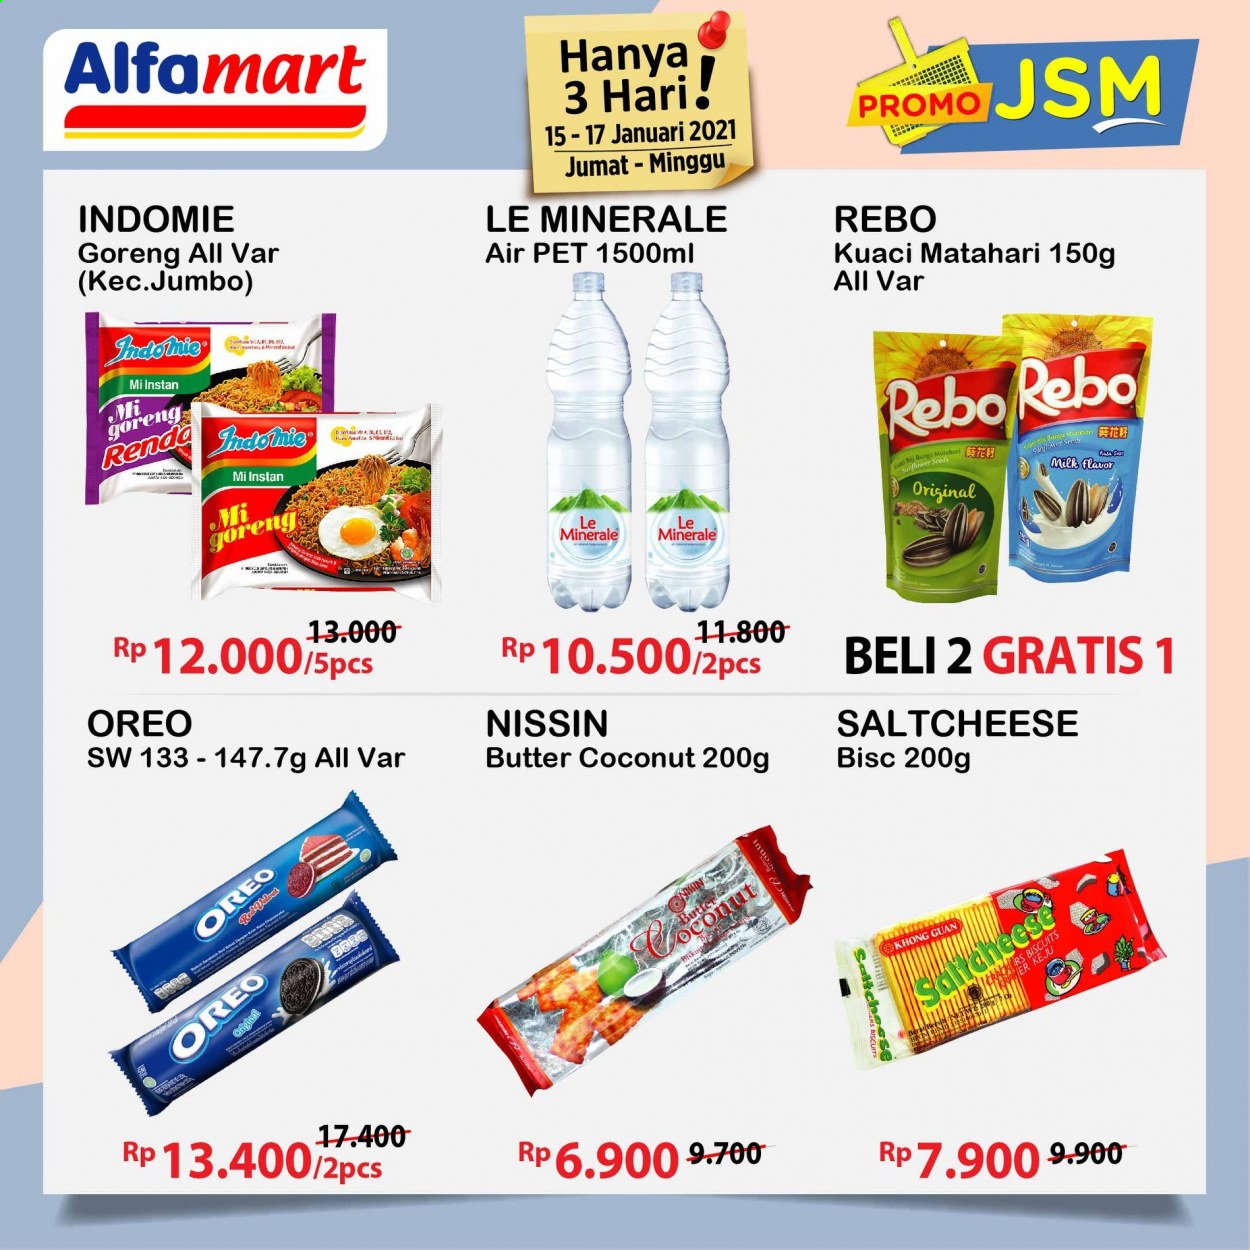 thumbnail - Promo Alfamart - 01/15/2021 - 01/17/2021 - Produk diskon - milk, goreng, rebo, pet, oreo, indomie, butter, biscuits, bra. Halaman 7.